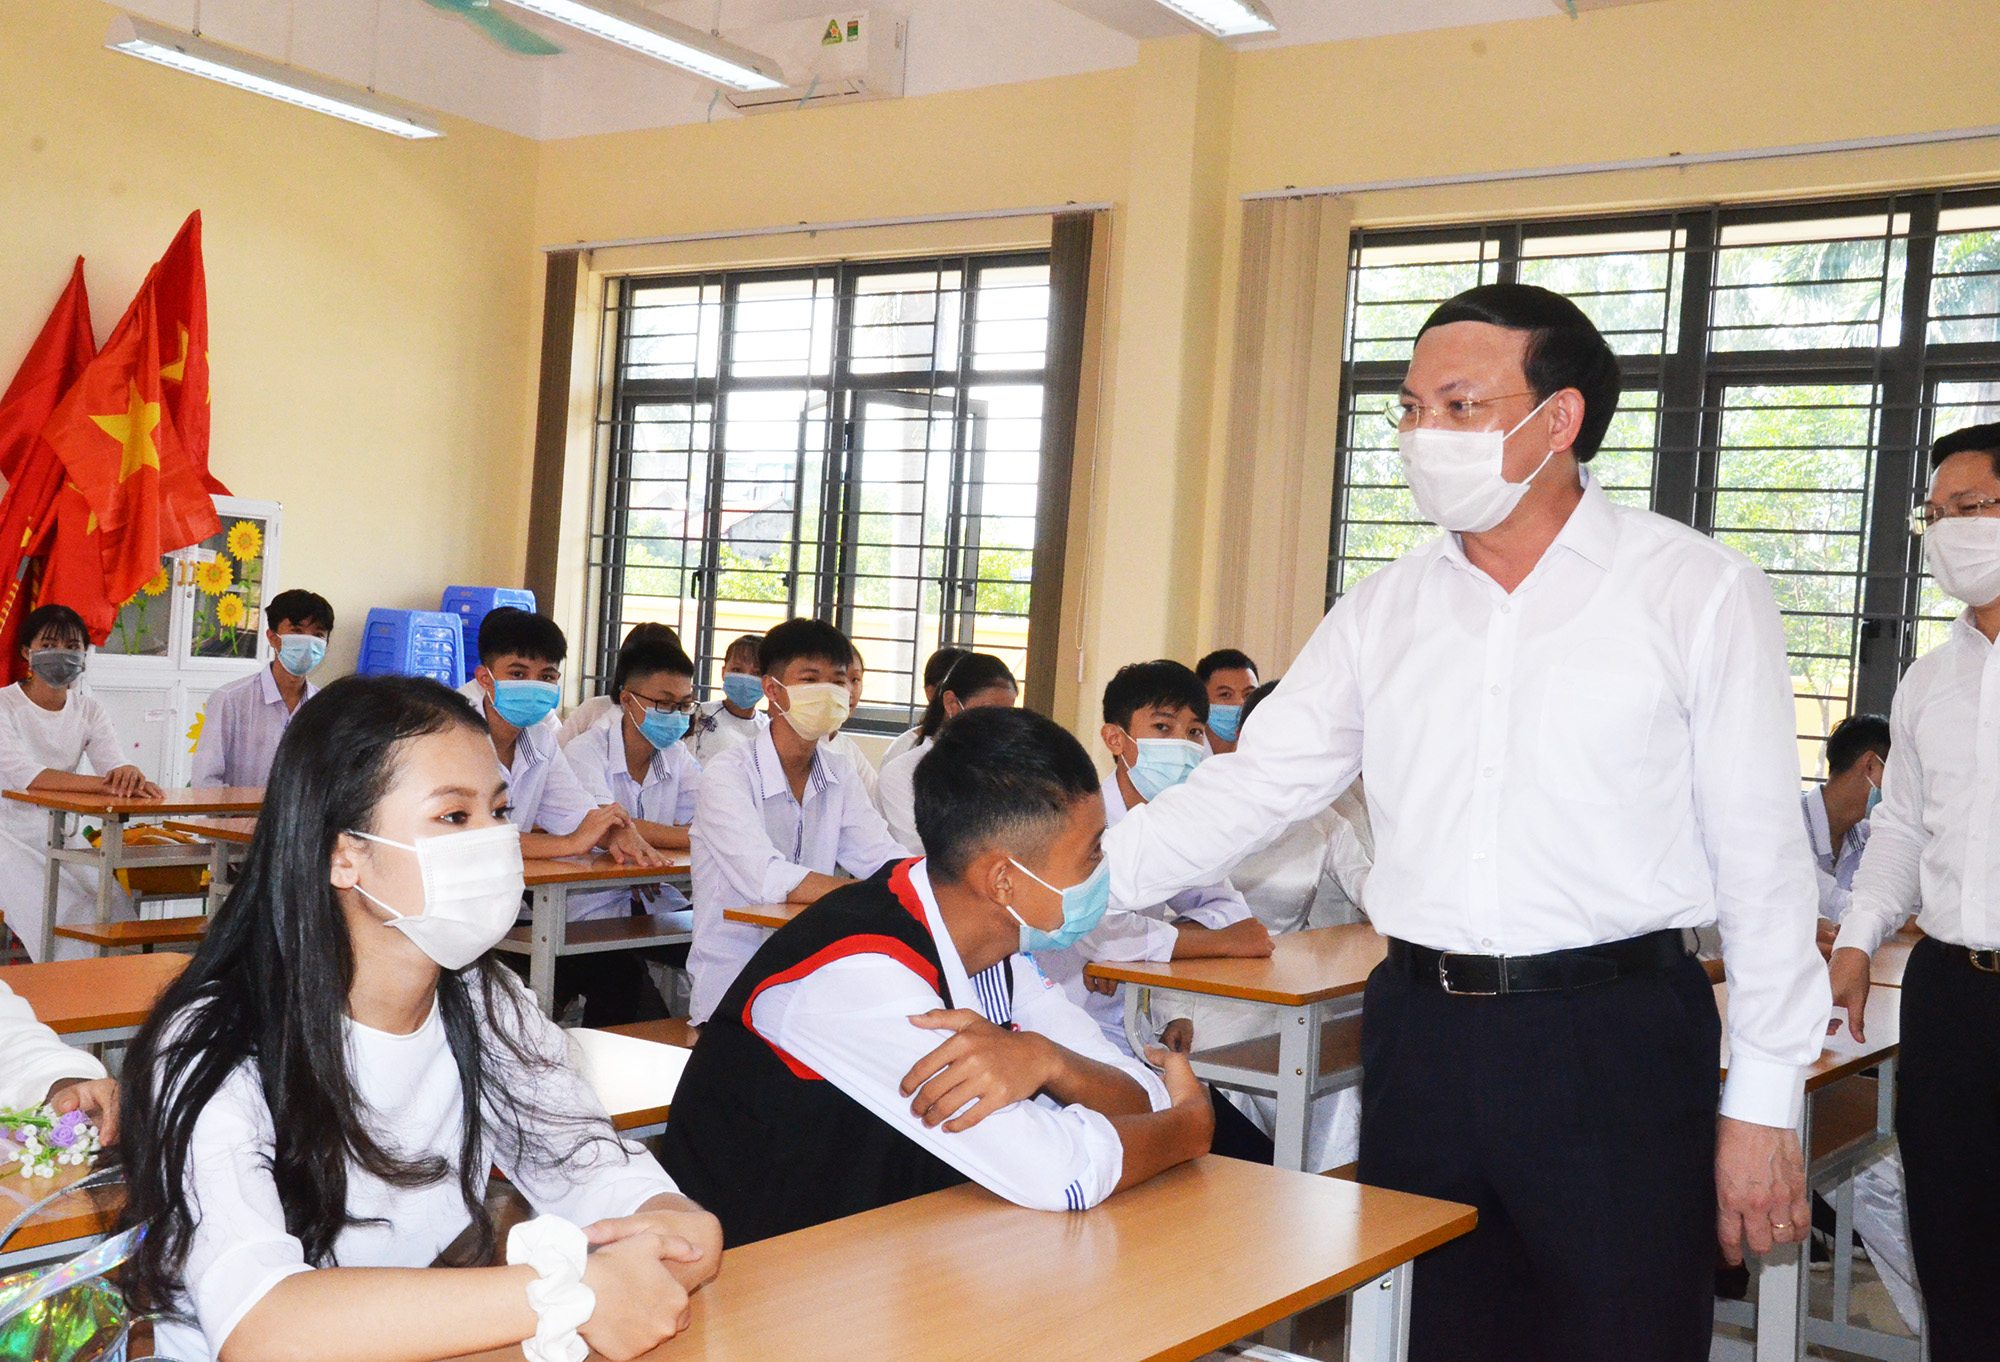 Đồng chí bí thư tỉnh ủy thăm cơ sở vật chất và động viên các em học sinh cố gắng học tập trong năm học mới.jpg